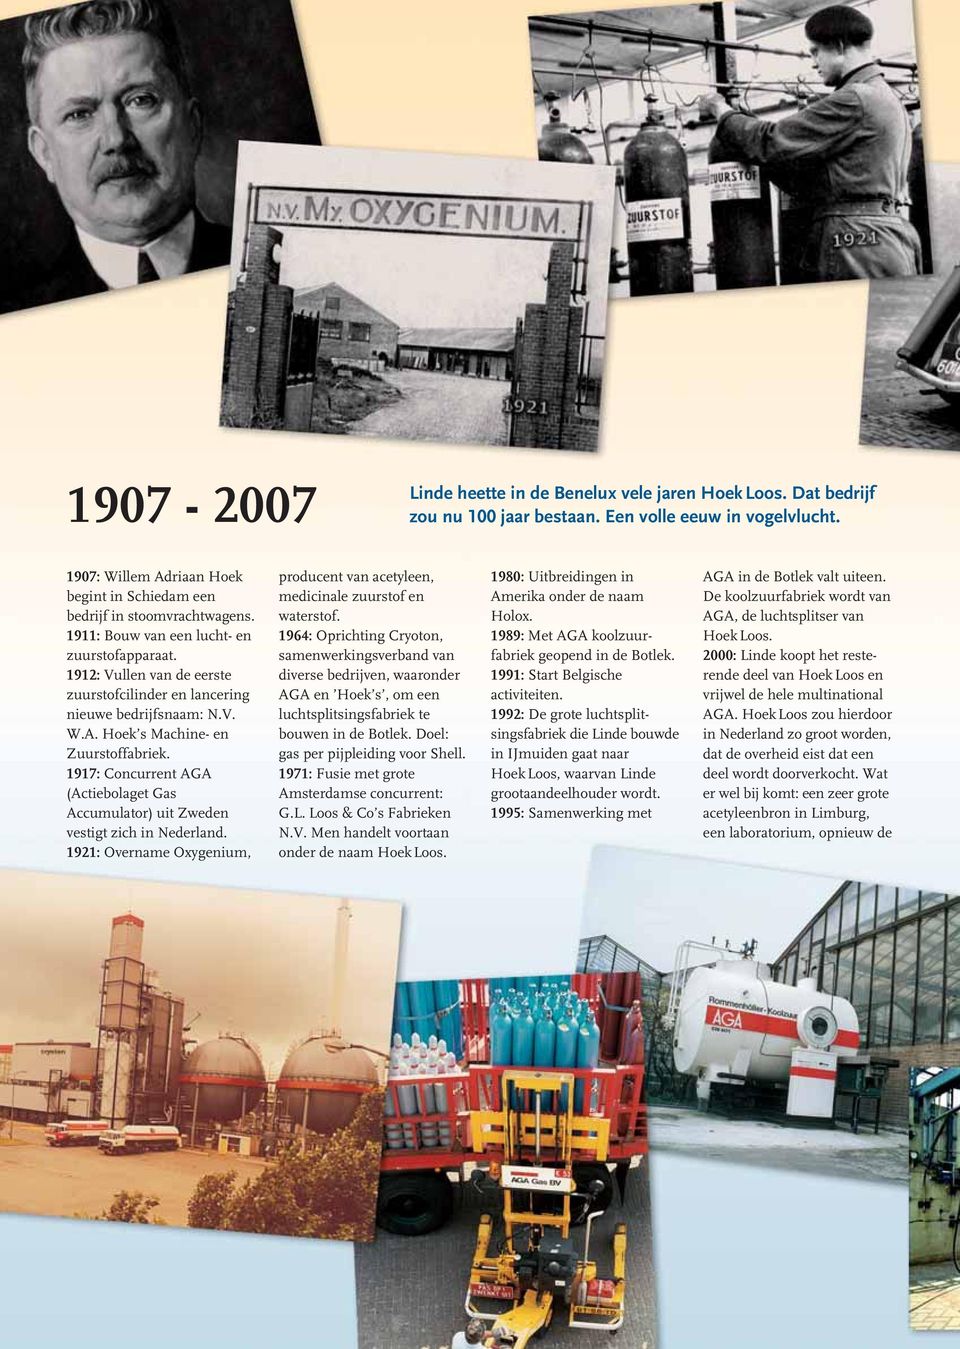 1912: Vullen van de eerste zuurstofcilinder en lancering nieuwe bedrijfsnaam: N.V. W.A. Hoek s Machine- en Zuurstoffabriek.